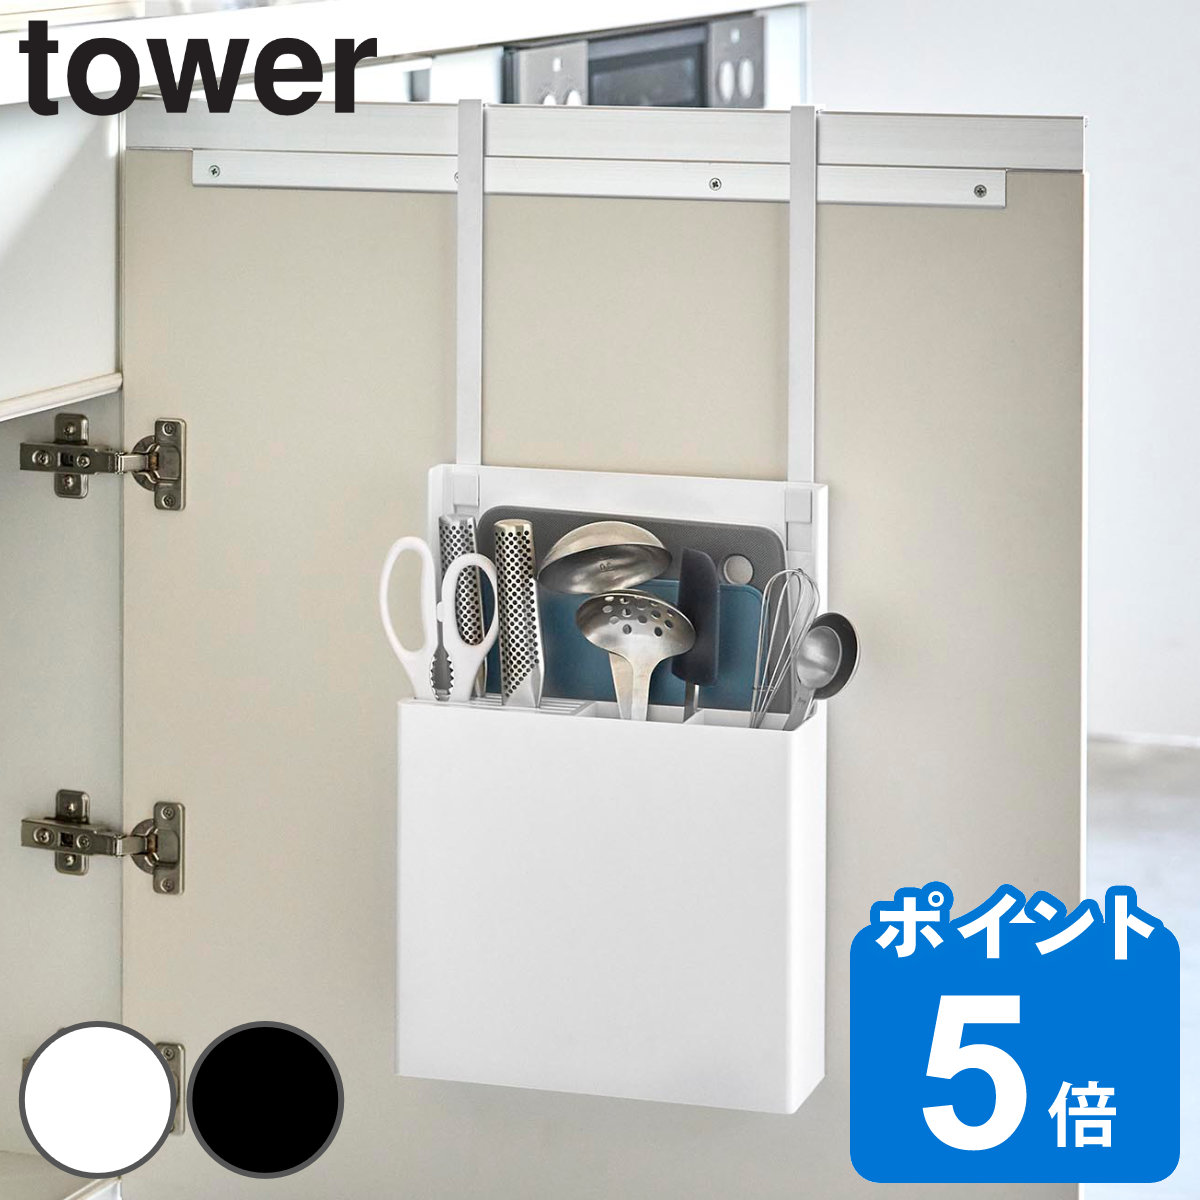 山崎実業 tower シンク扉オールインワンキッチンツールホルダー タワー